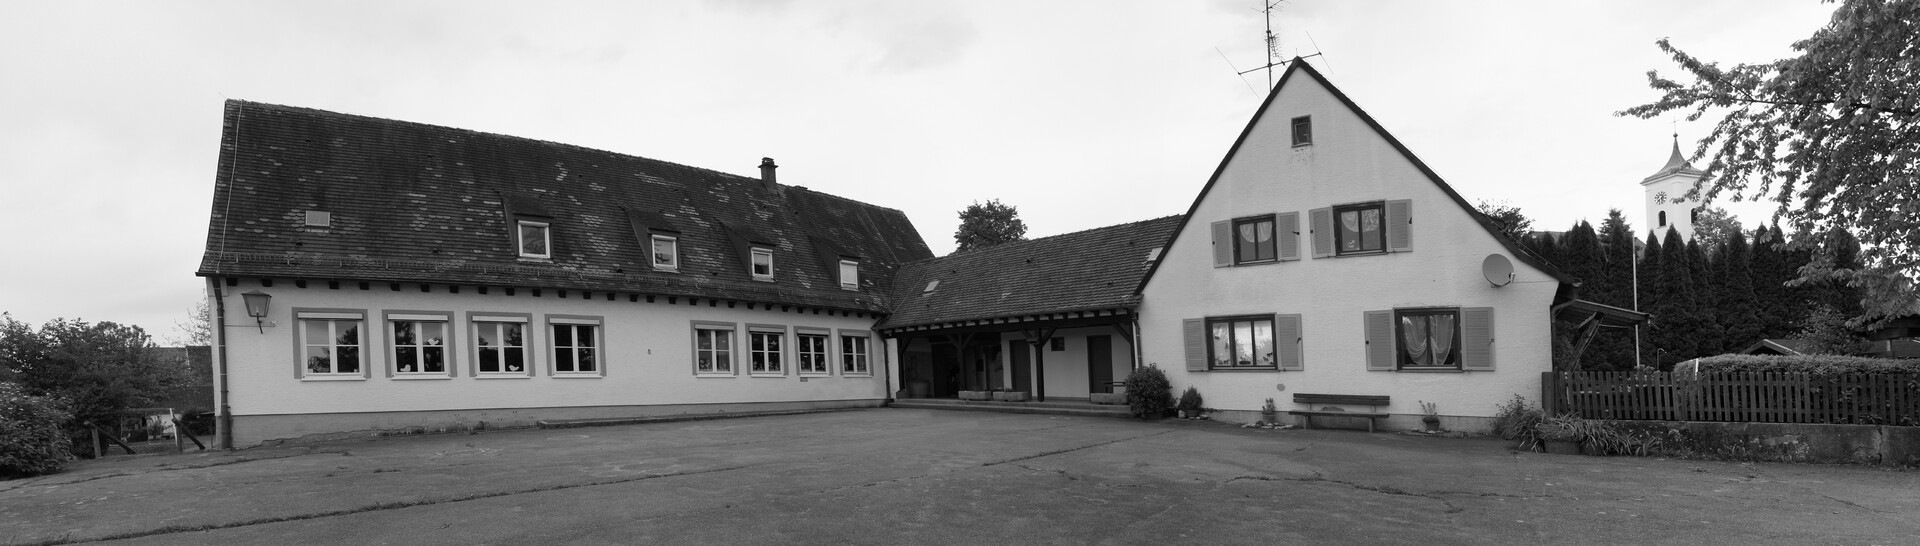 Schulhaus Berg.jpg